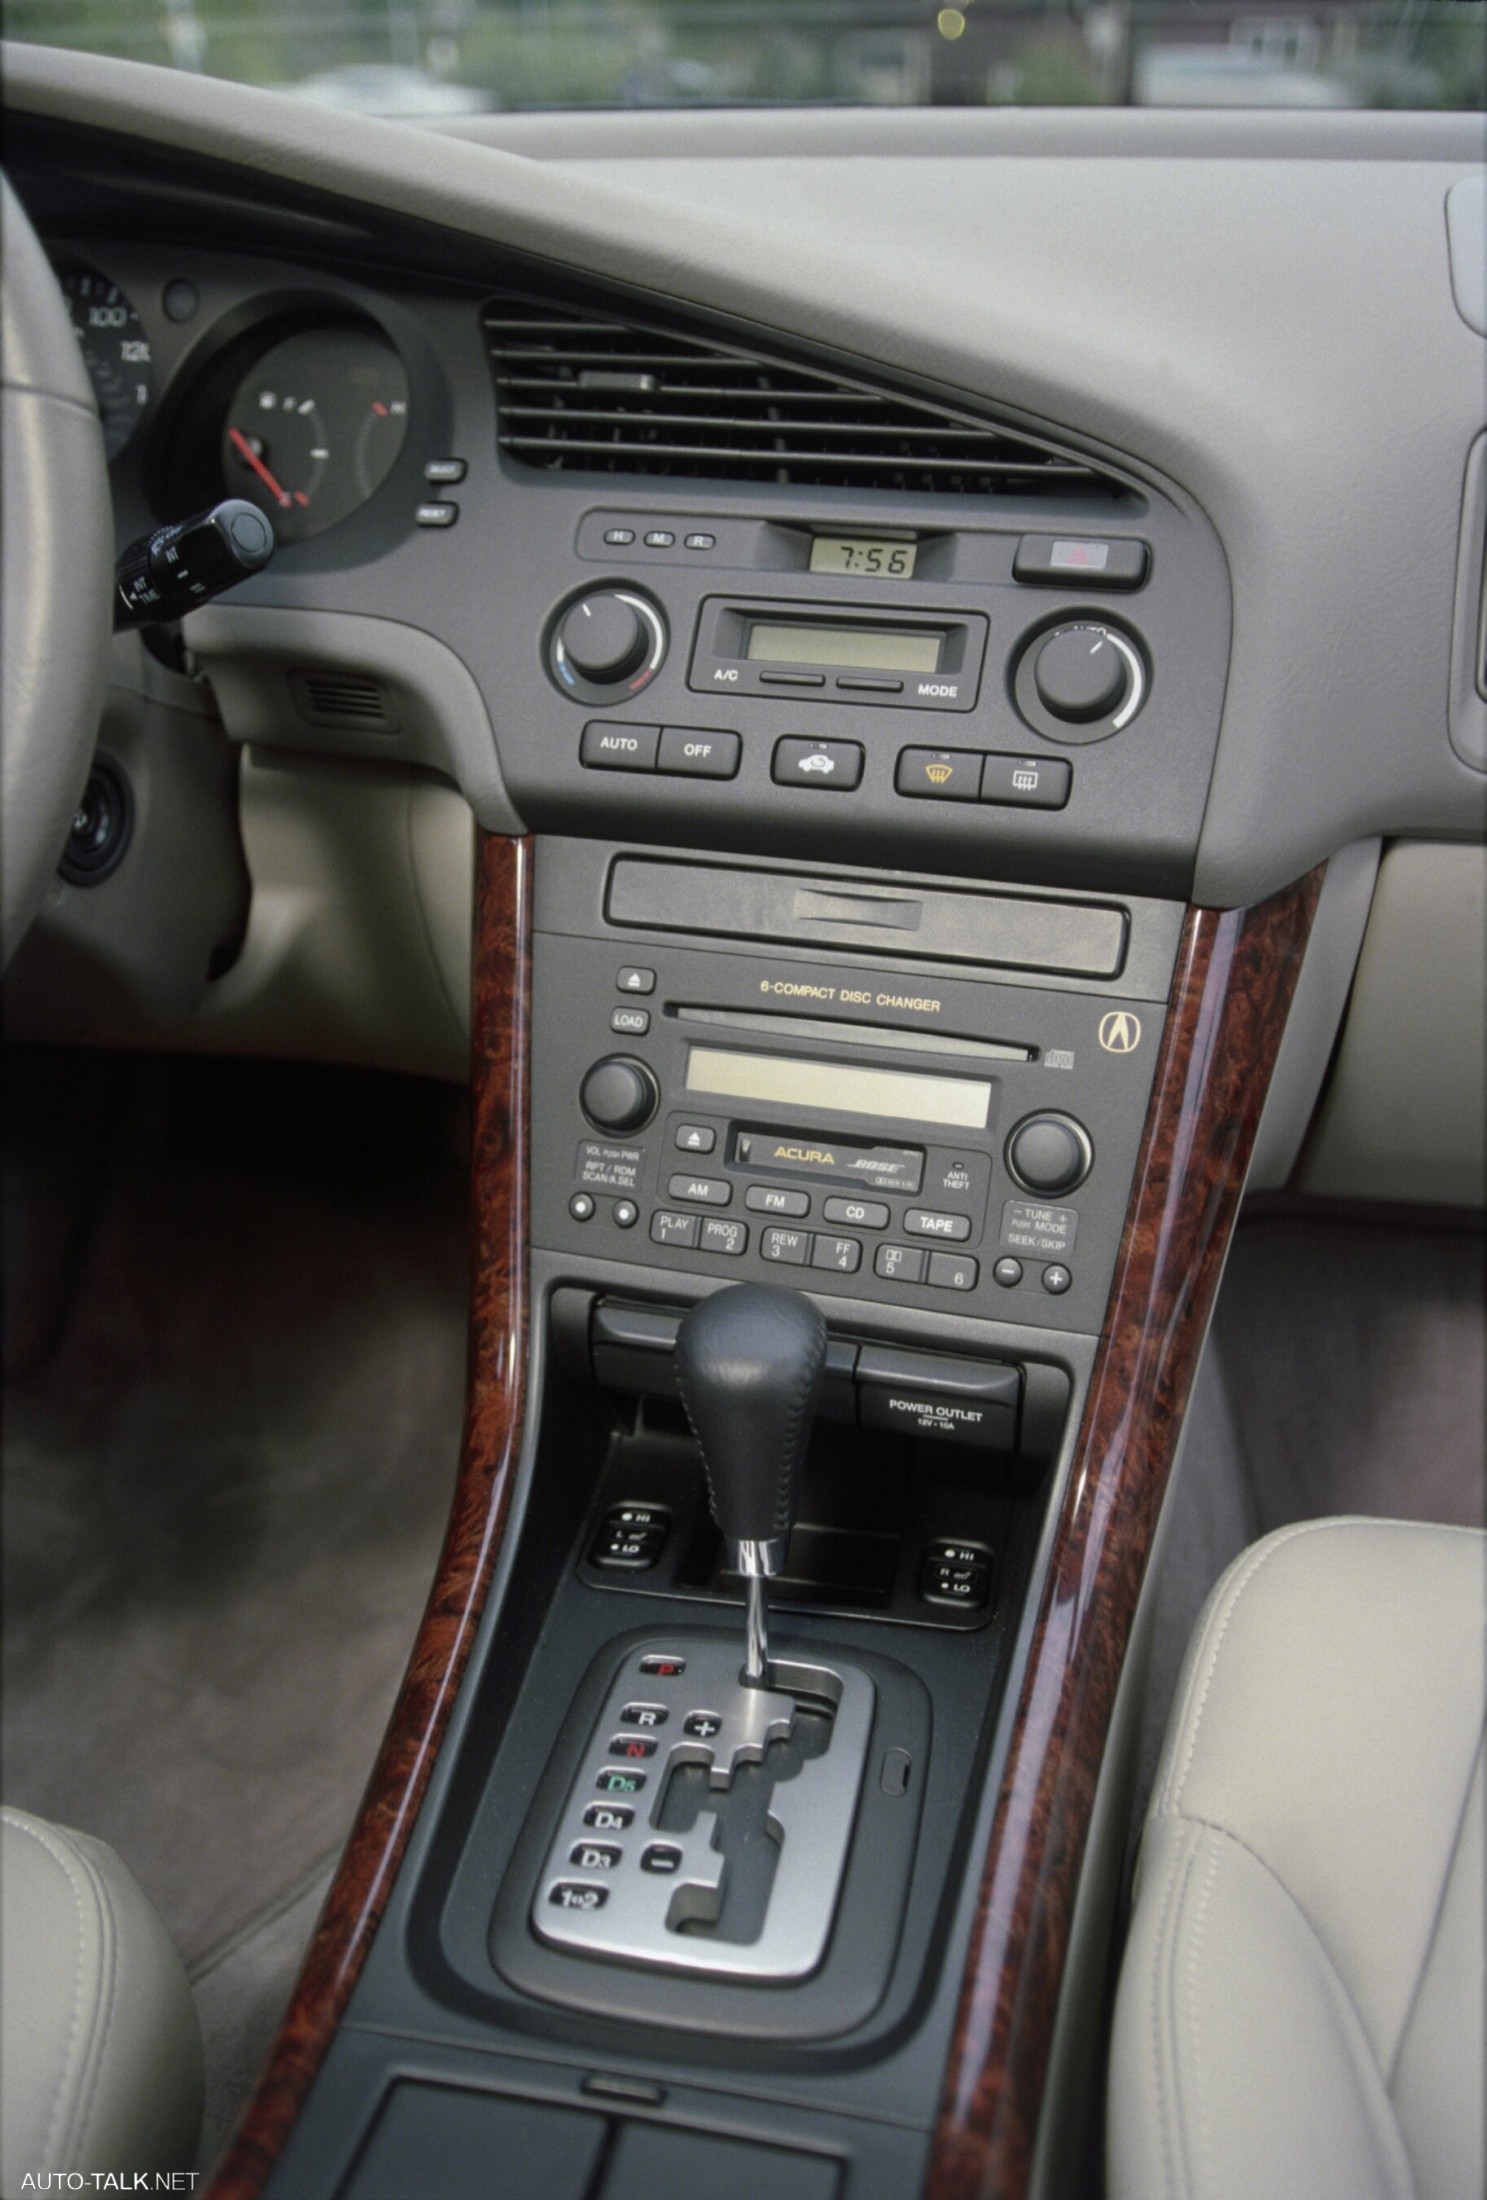 2001 Acura 3.2 CL